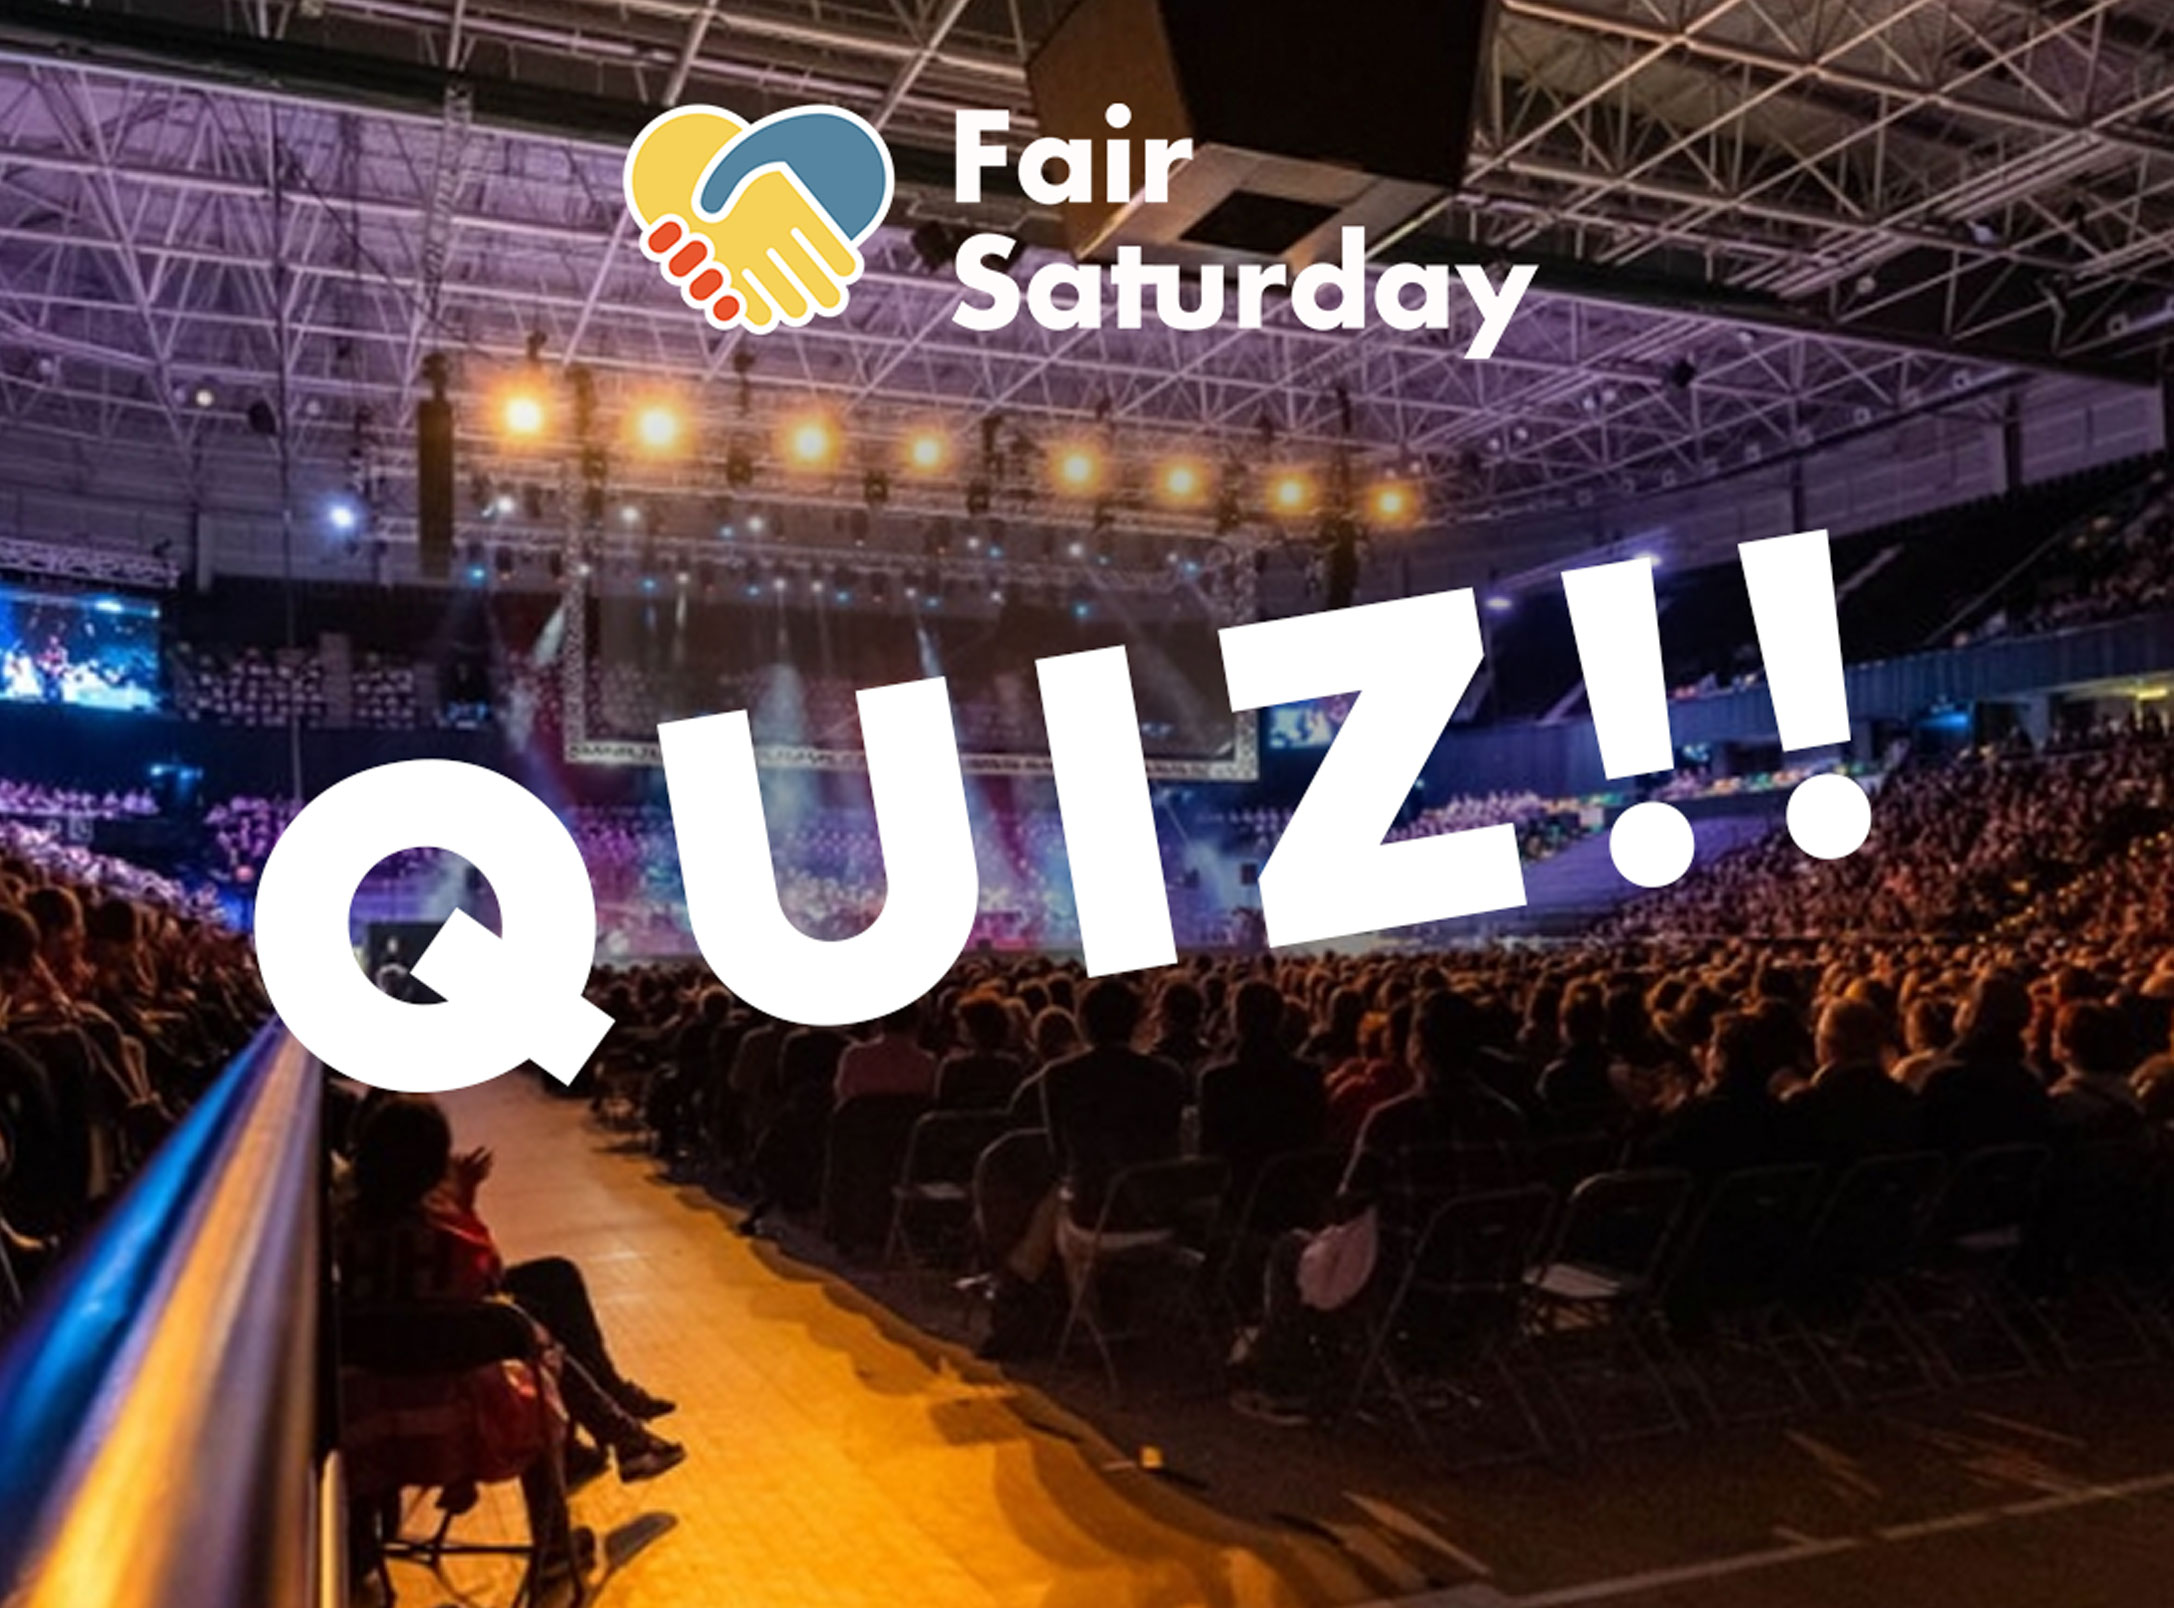 Contesta el quiz sobre Fair Saturday y gana 200 euros para la ONG que prefieras